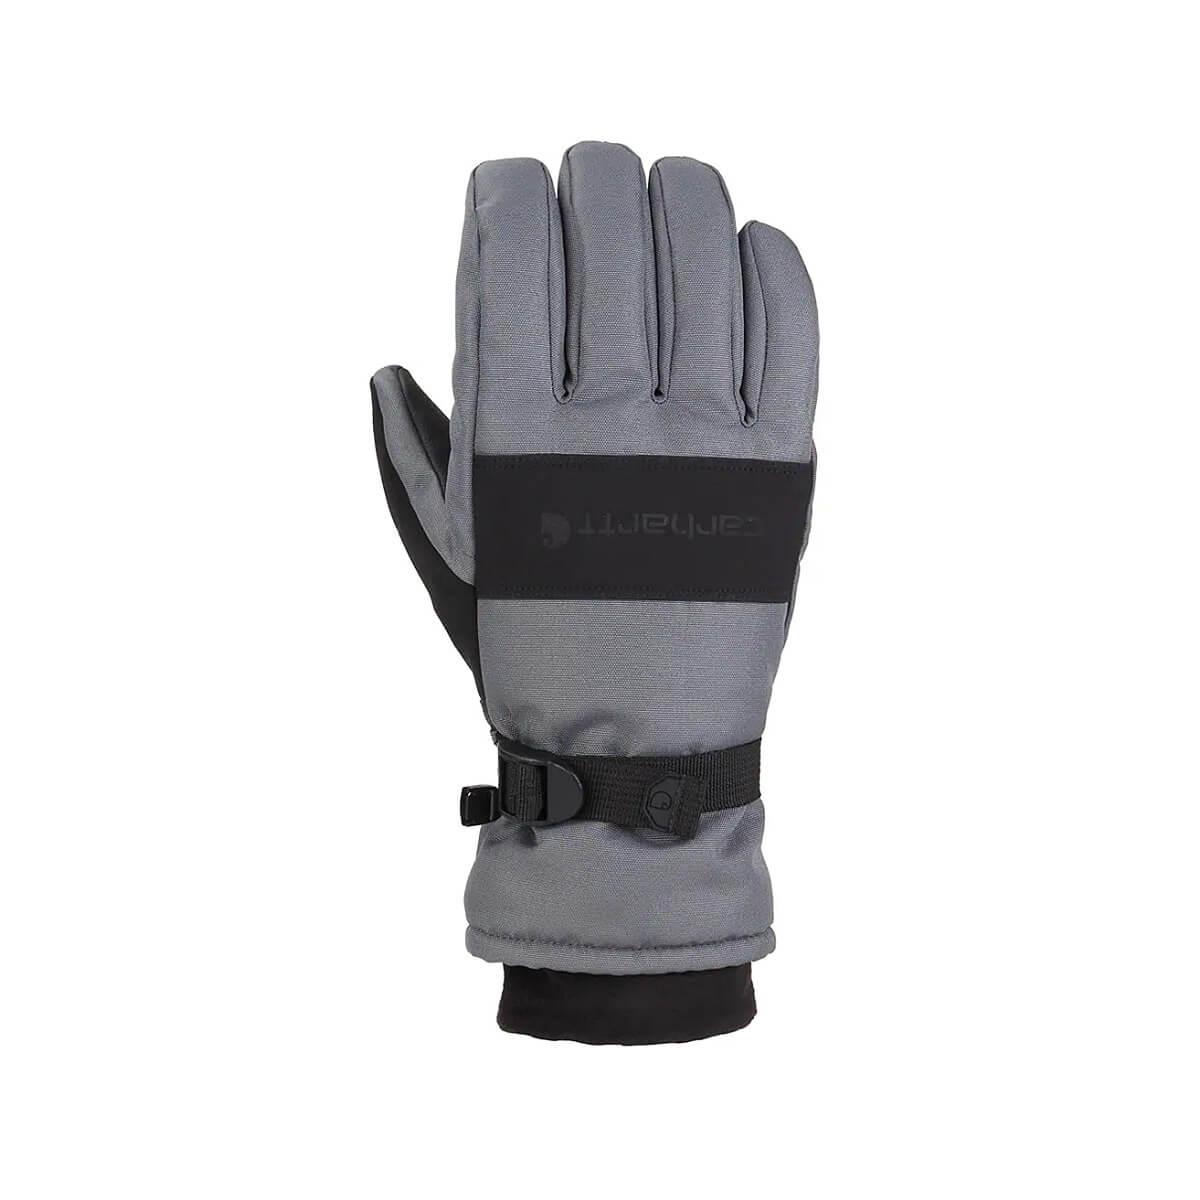  Men's Waterproof Insulated Gloves